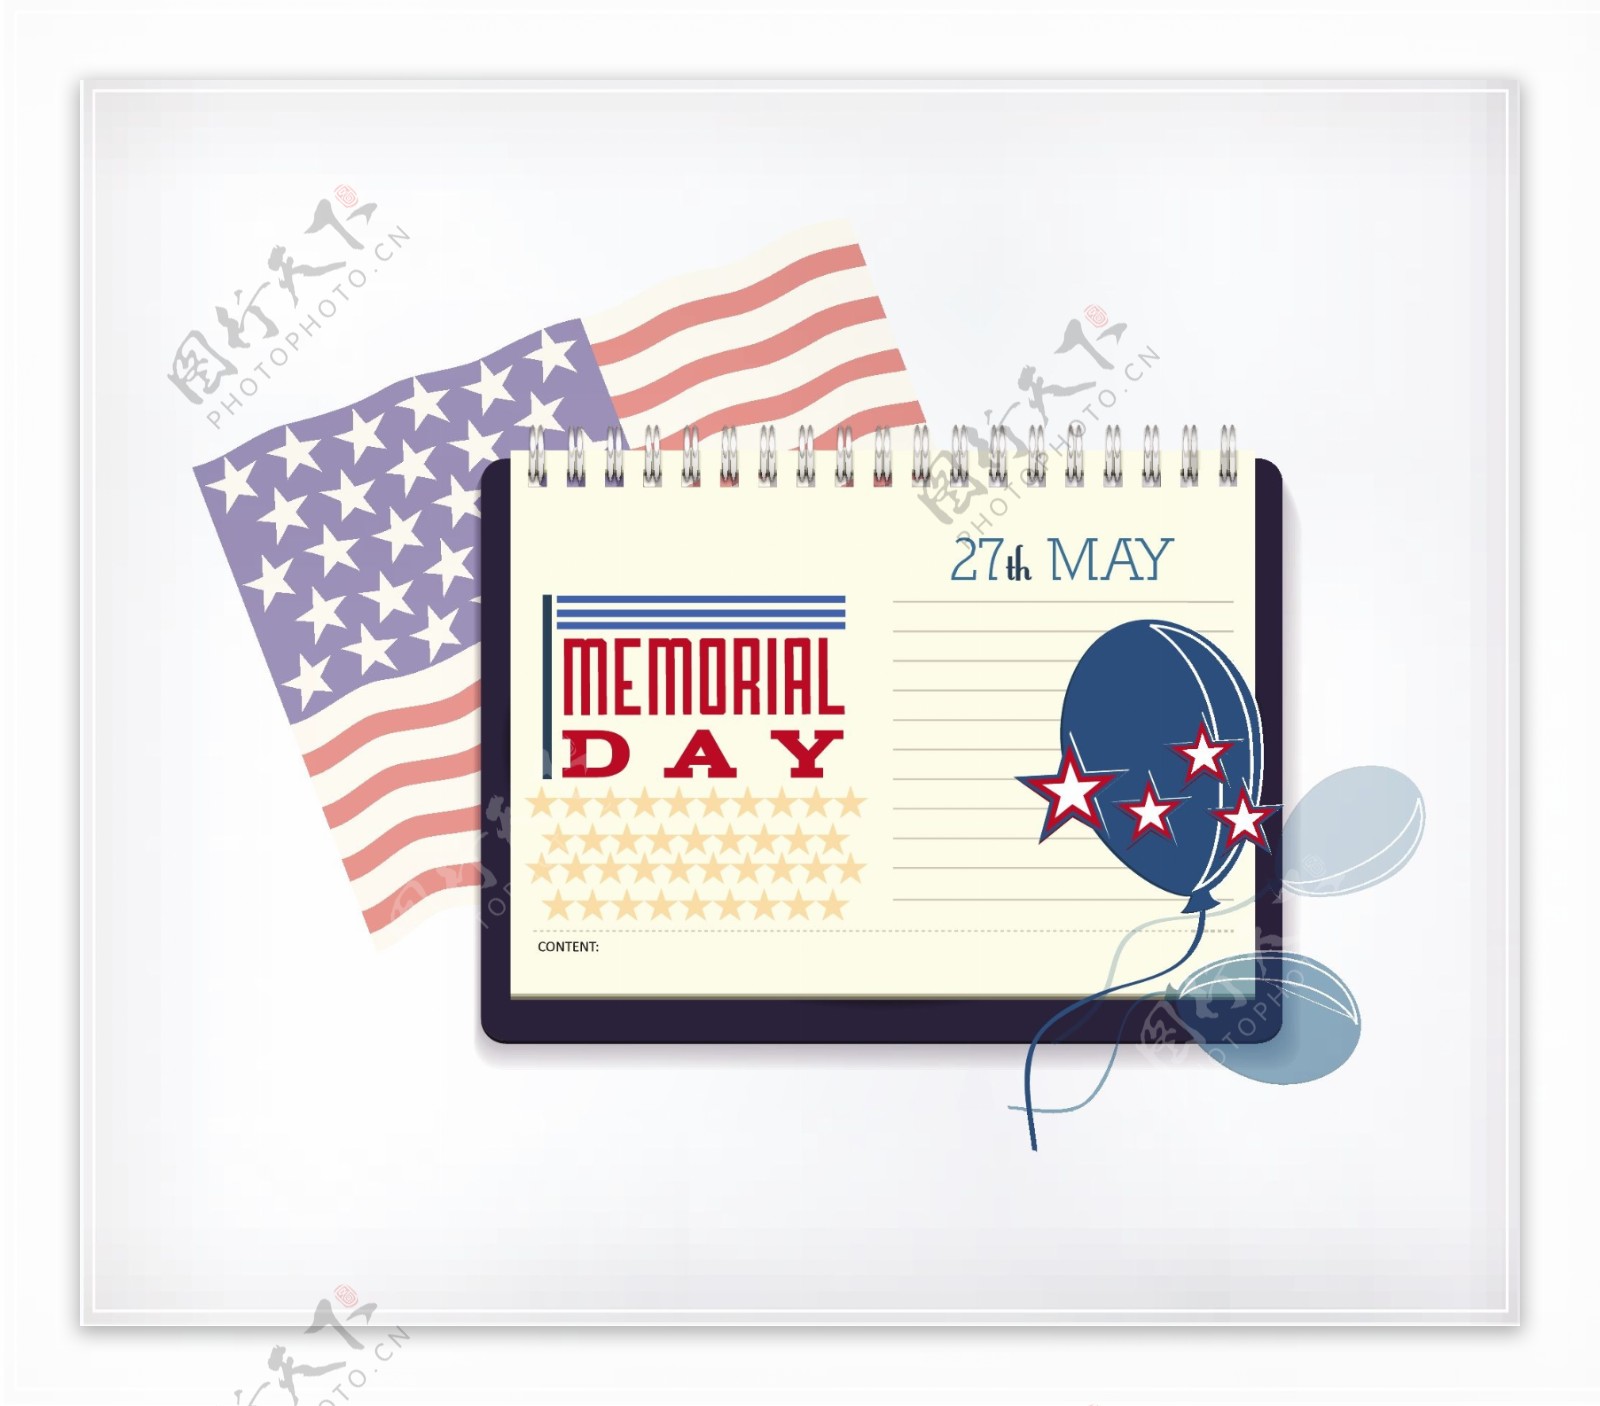 日历和美国国旗纪念日的矢量插图